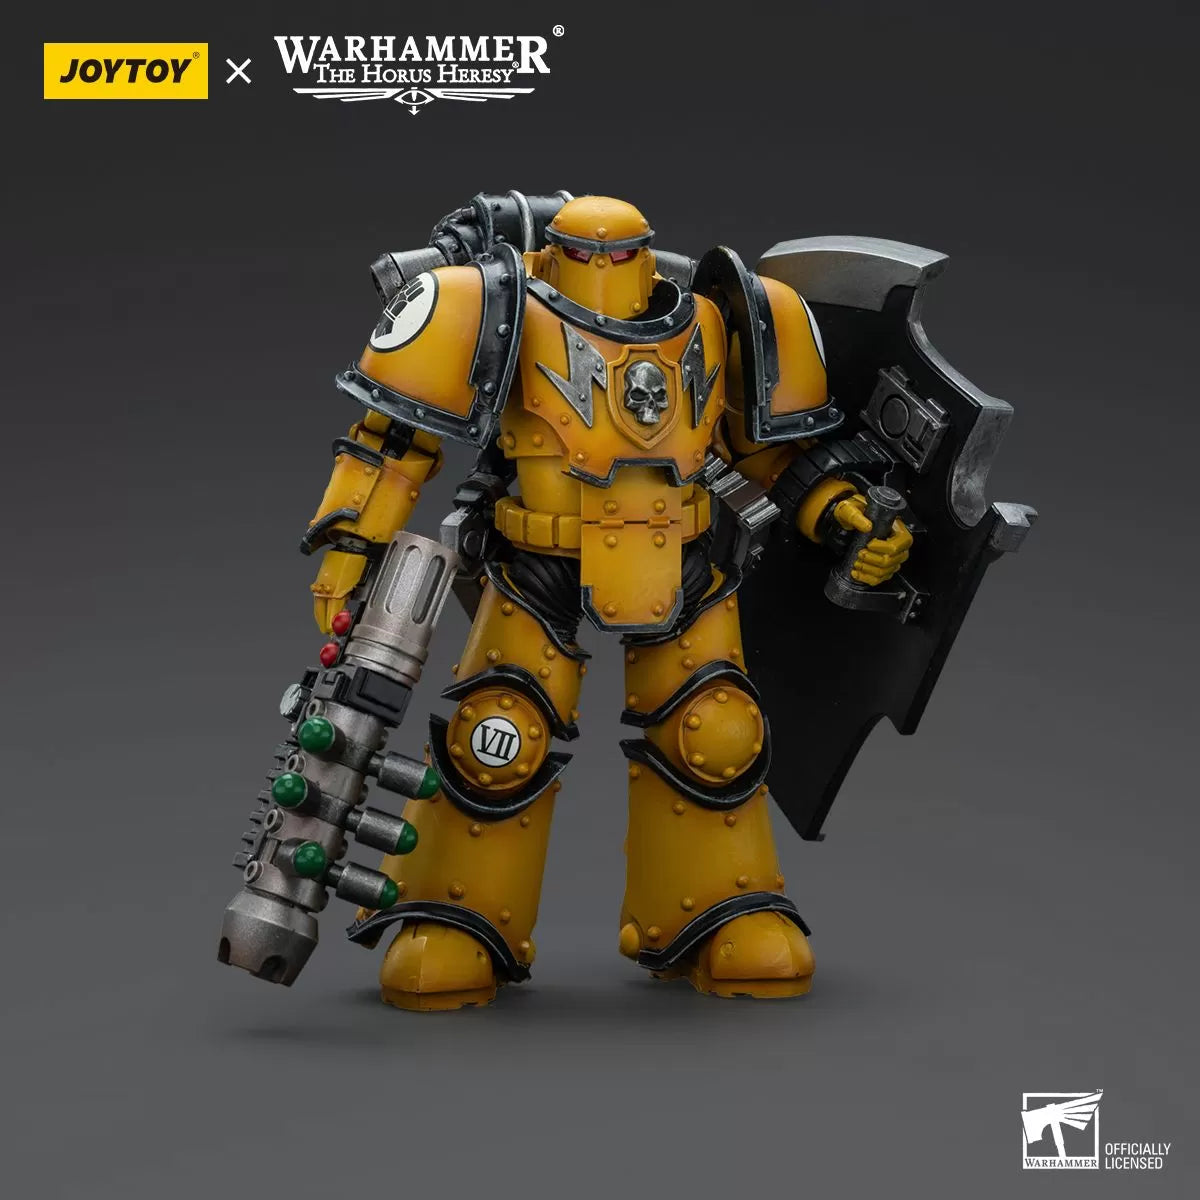 Warhammer Collectibles: 1/18 Scale Imperial Fists Legion MkIII Breacher Squad Legion Breacher w Gun - Preorder